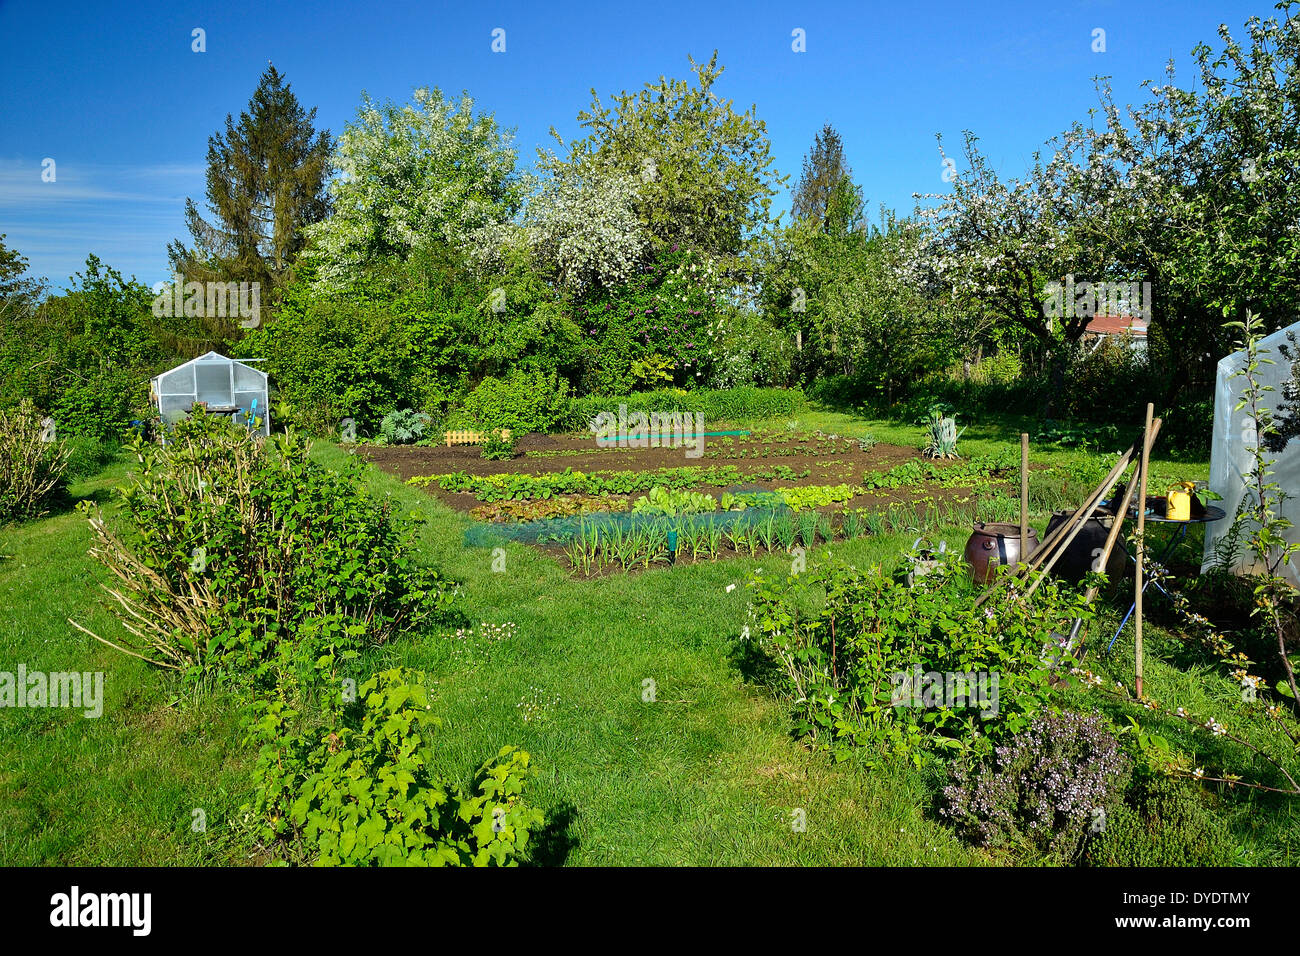 Potager en mai, avec des framboises, une haie d'arbustes et d'arbres fruitiers (pommiers, cerisiers), serre jardin. Banque D'Images